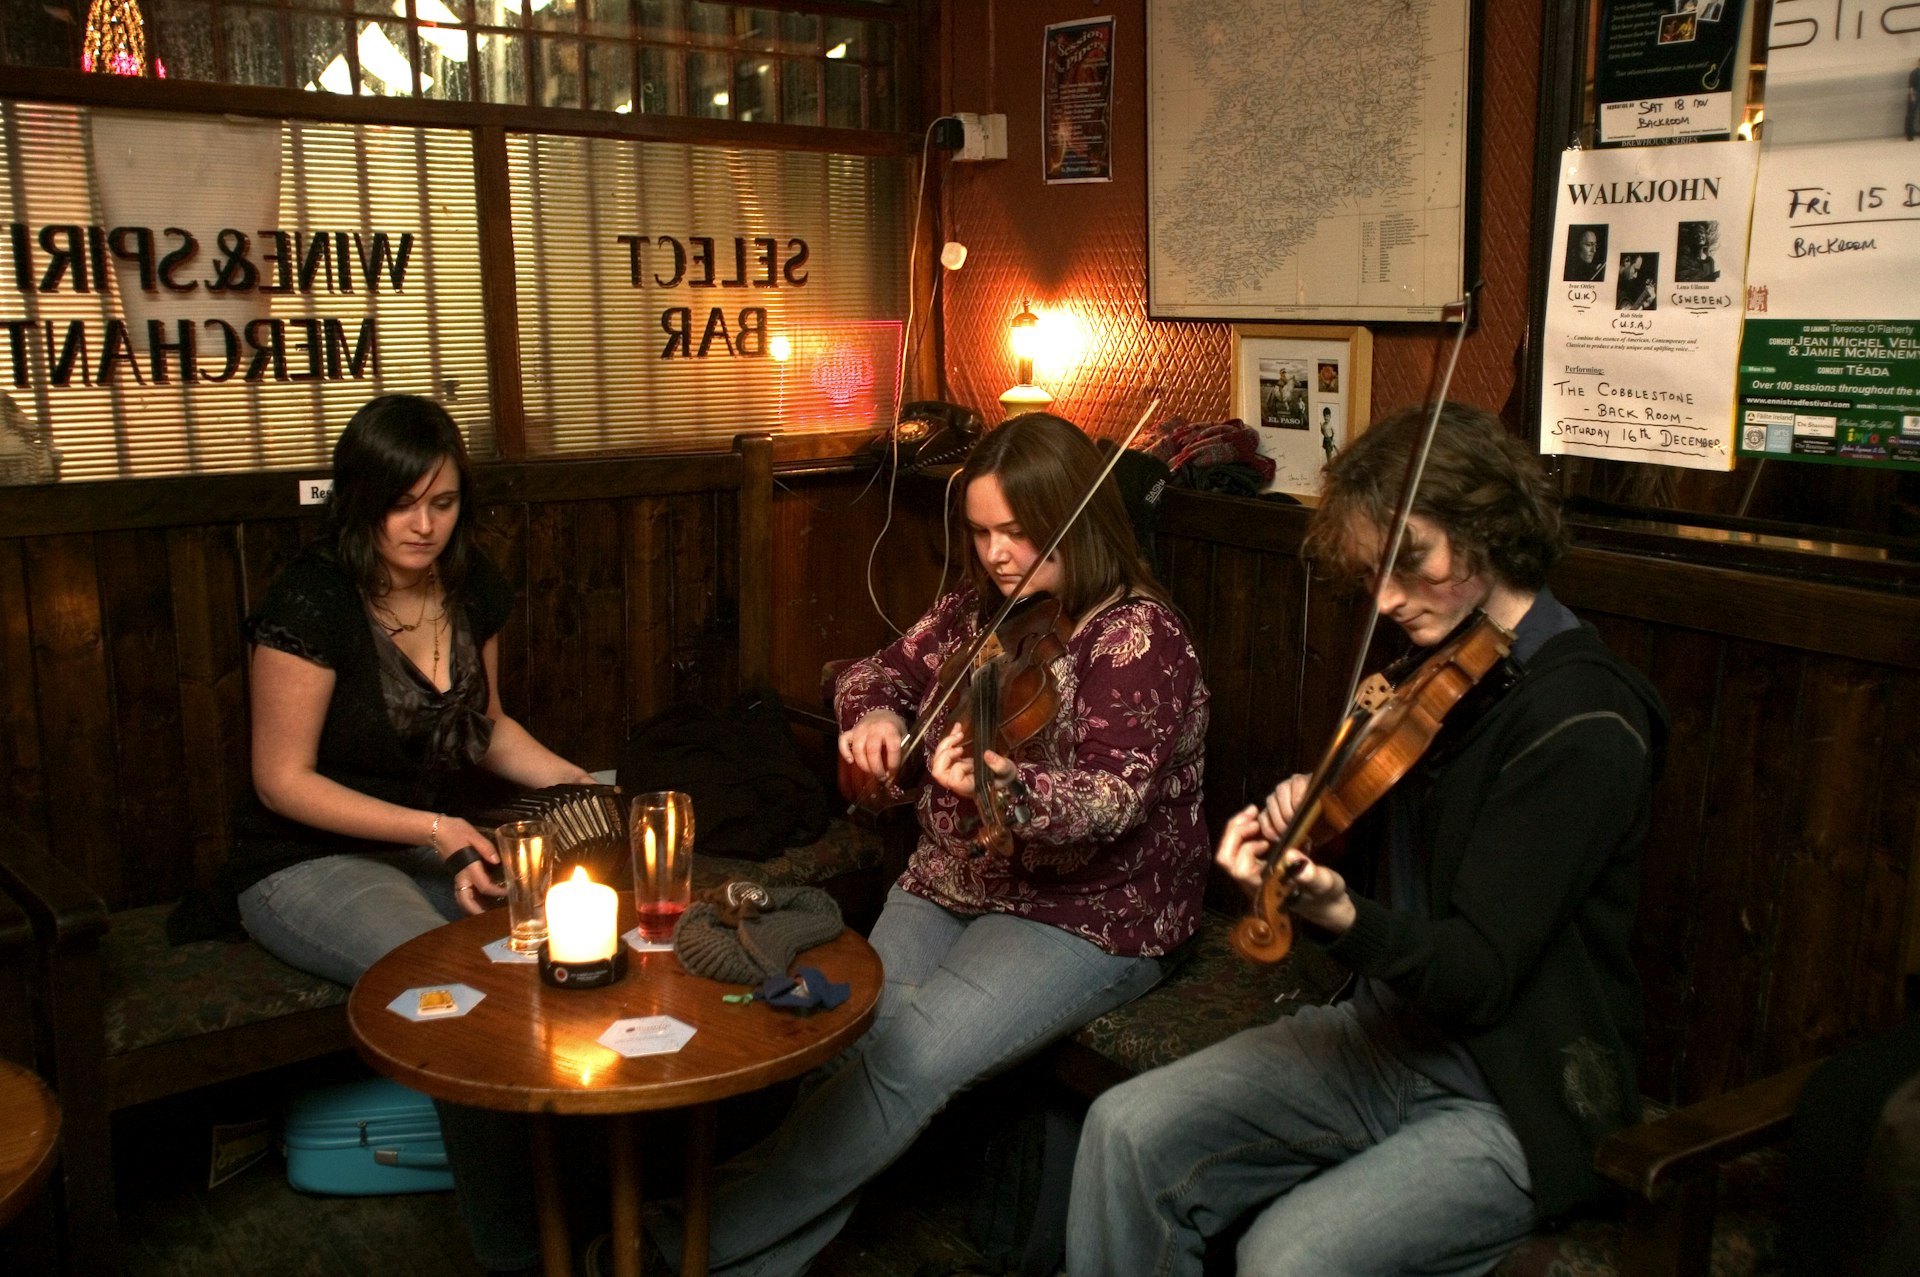 Traditional folk musicians in the Cobblestone pub in Ireland